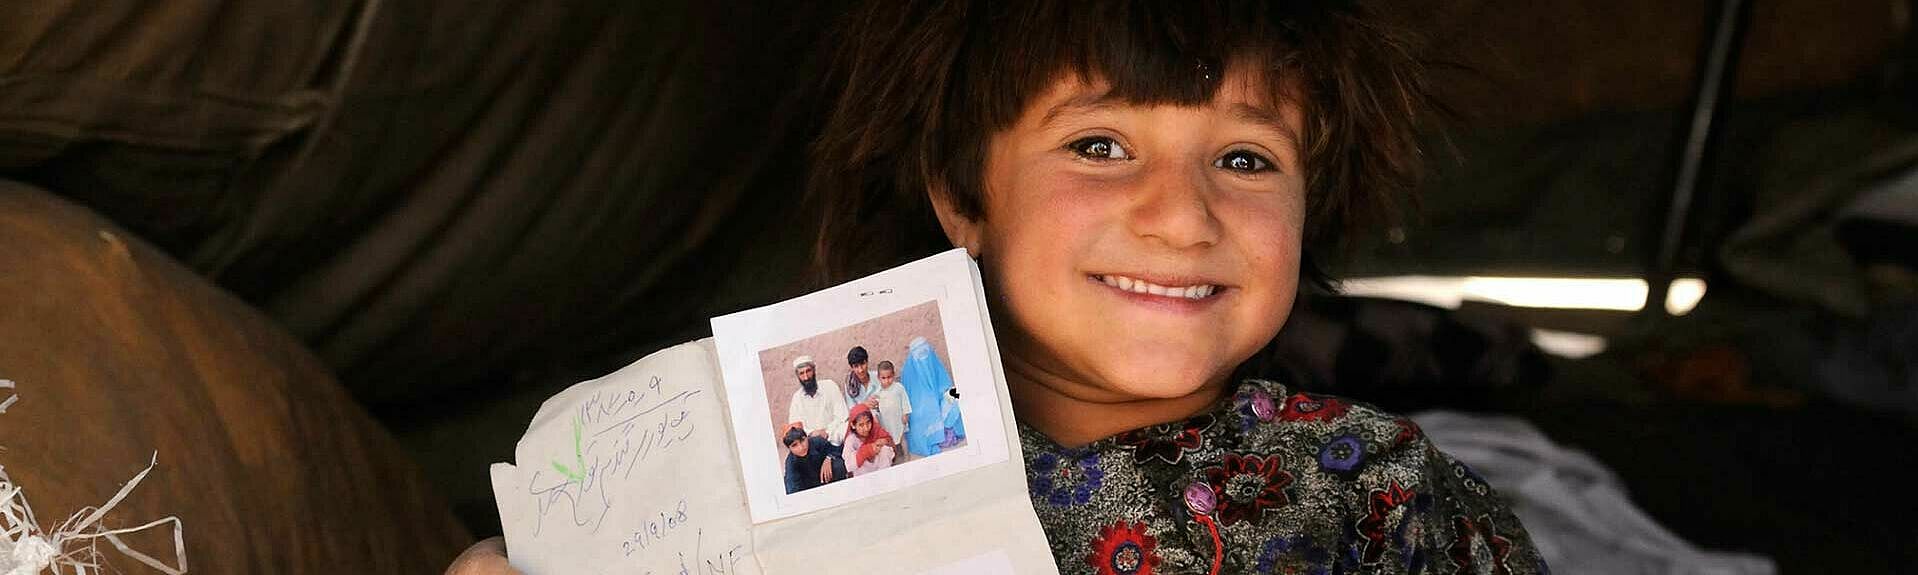 Junge mit Dokumenten des UNHCRs